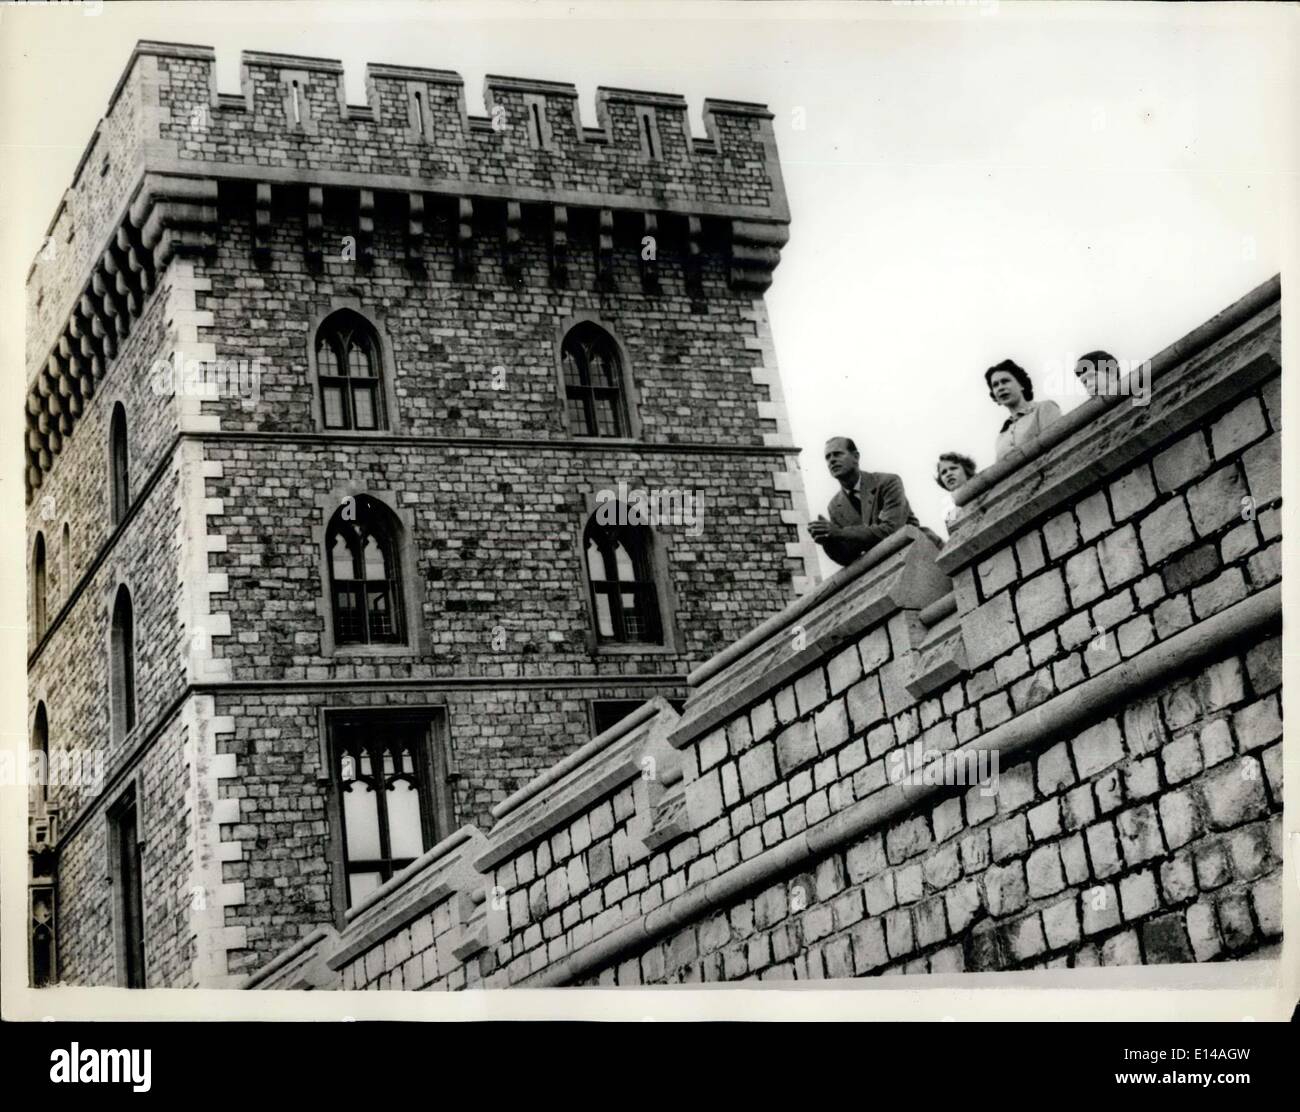 Abril 17, 2012 - No se publicarán antes de diarios de Saturday, June 6th, 1959. La reina con su familia en el castillo de Windsor. La Reina y su familia en el Oriente Terrance con la Queen's Tower en el fondo. Foto de stock